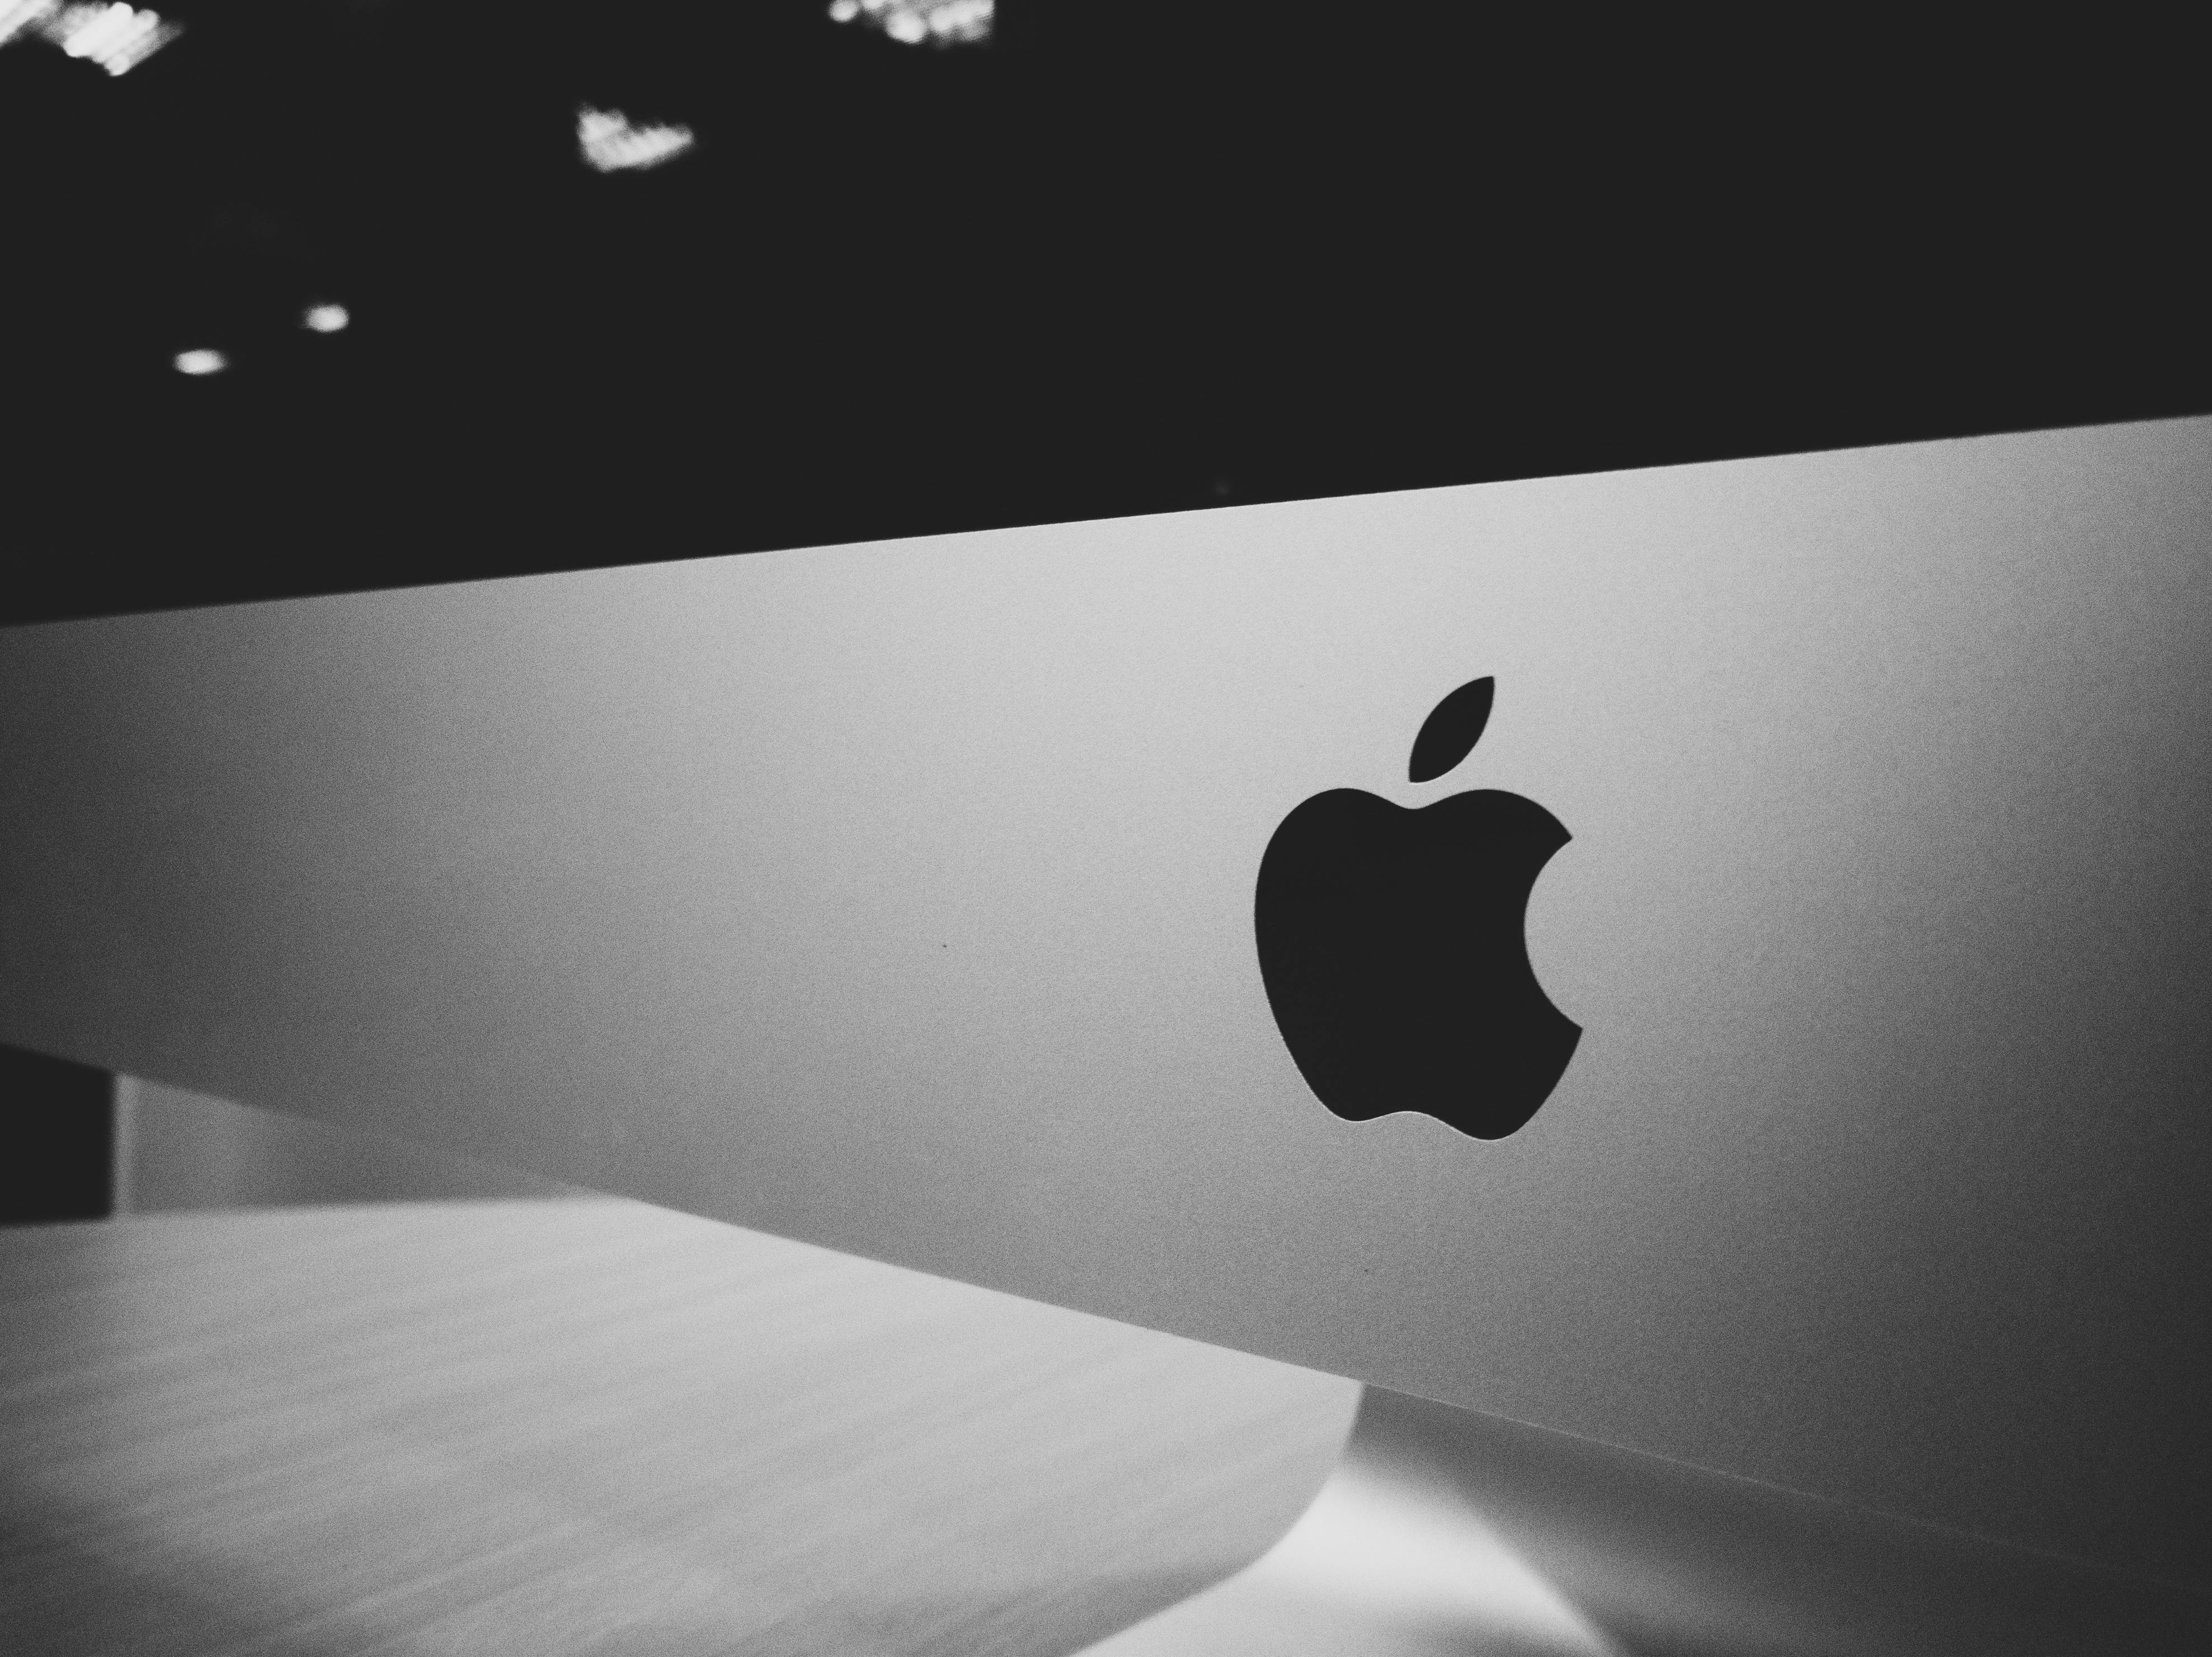 Apple paditet për përdorimin e paligjshëm të ‘fuqisë monopol’ për të nxjerrë më shumë para nga konsumatorët